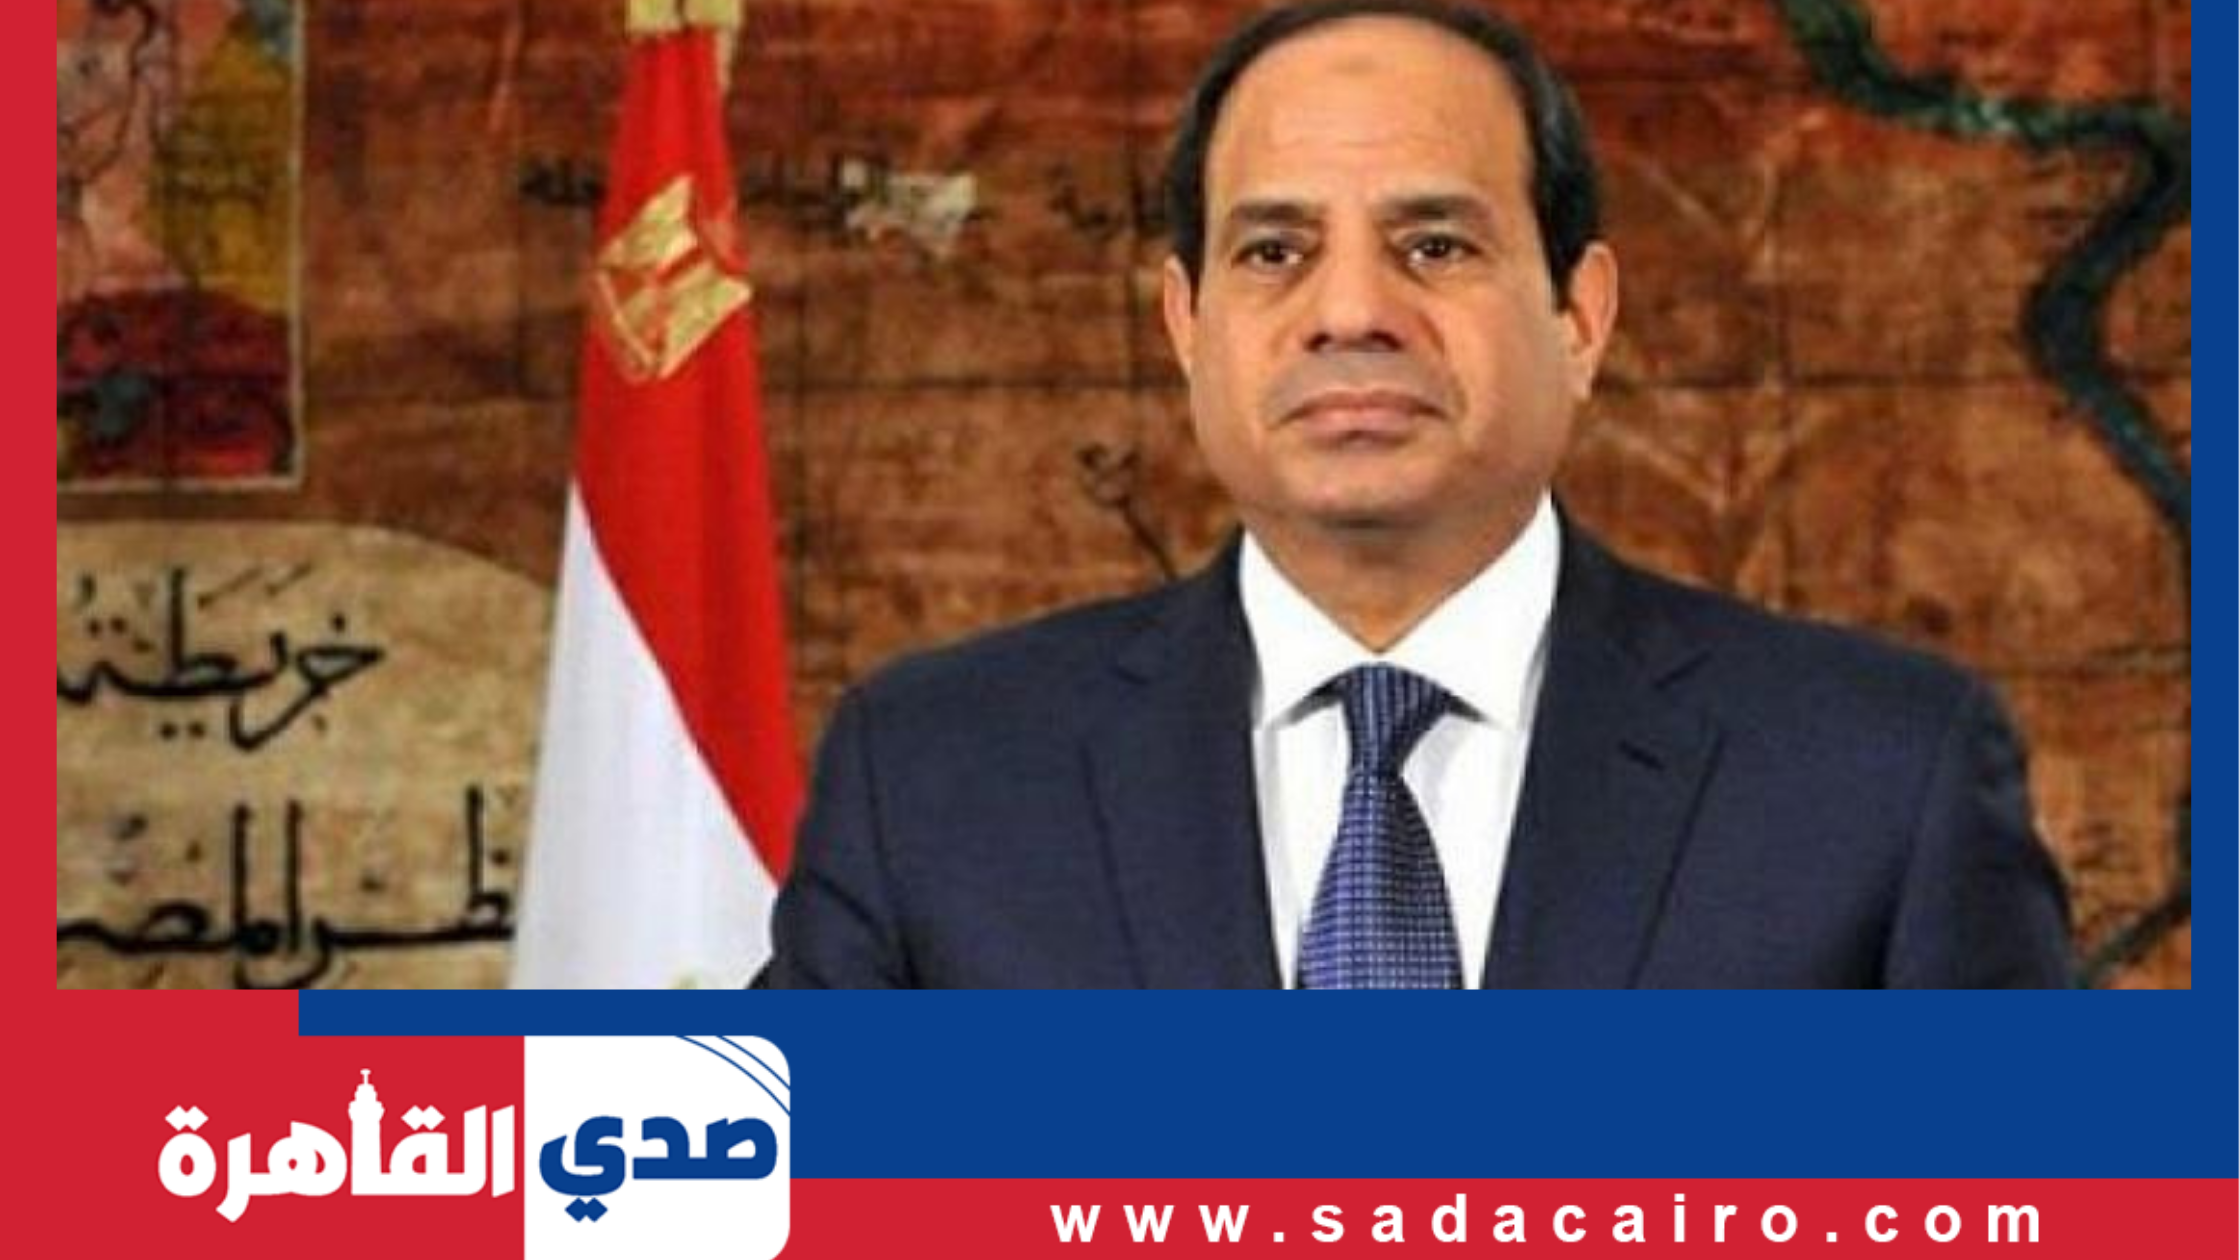 رئيس الجمهورية يبعث برسالة إلى أبناء الجاليات المصرية في الخارج